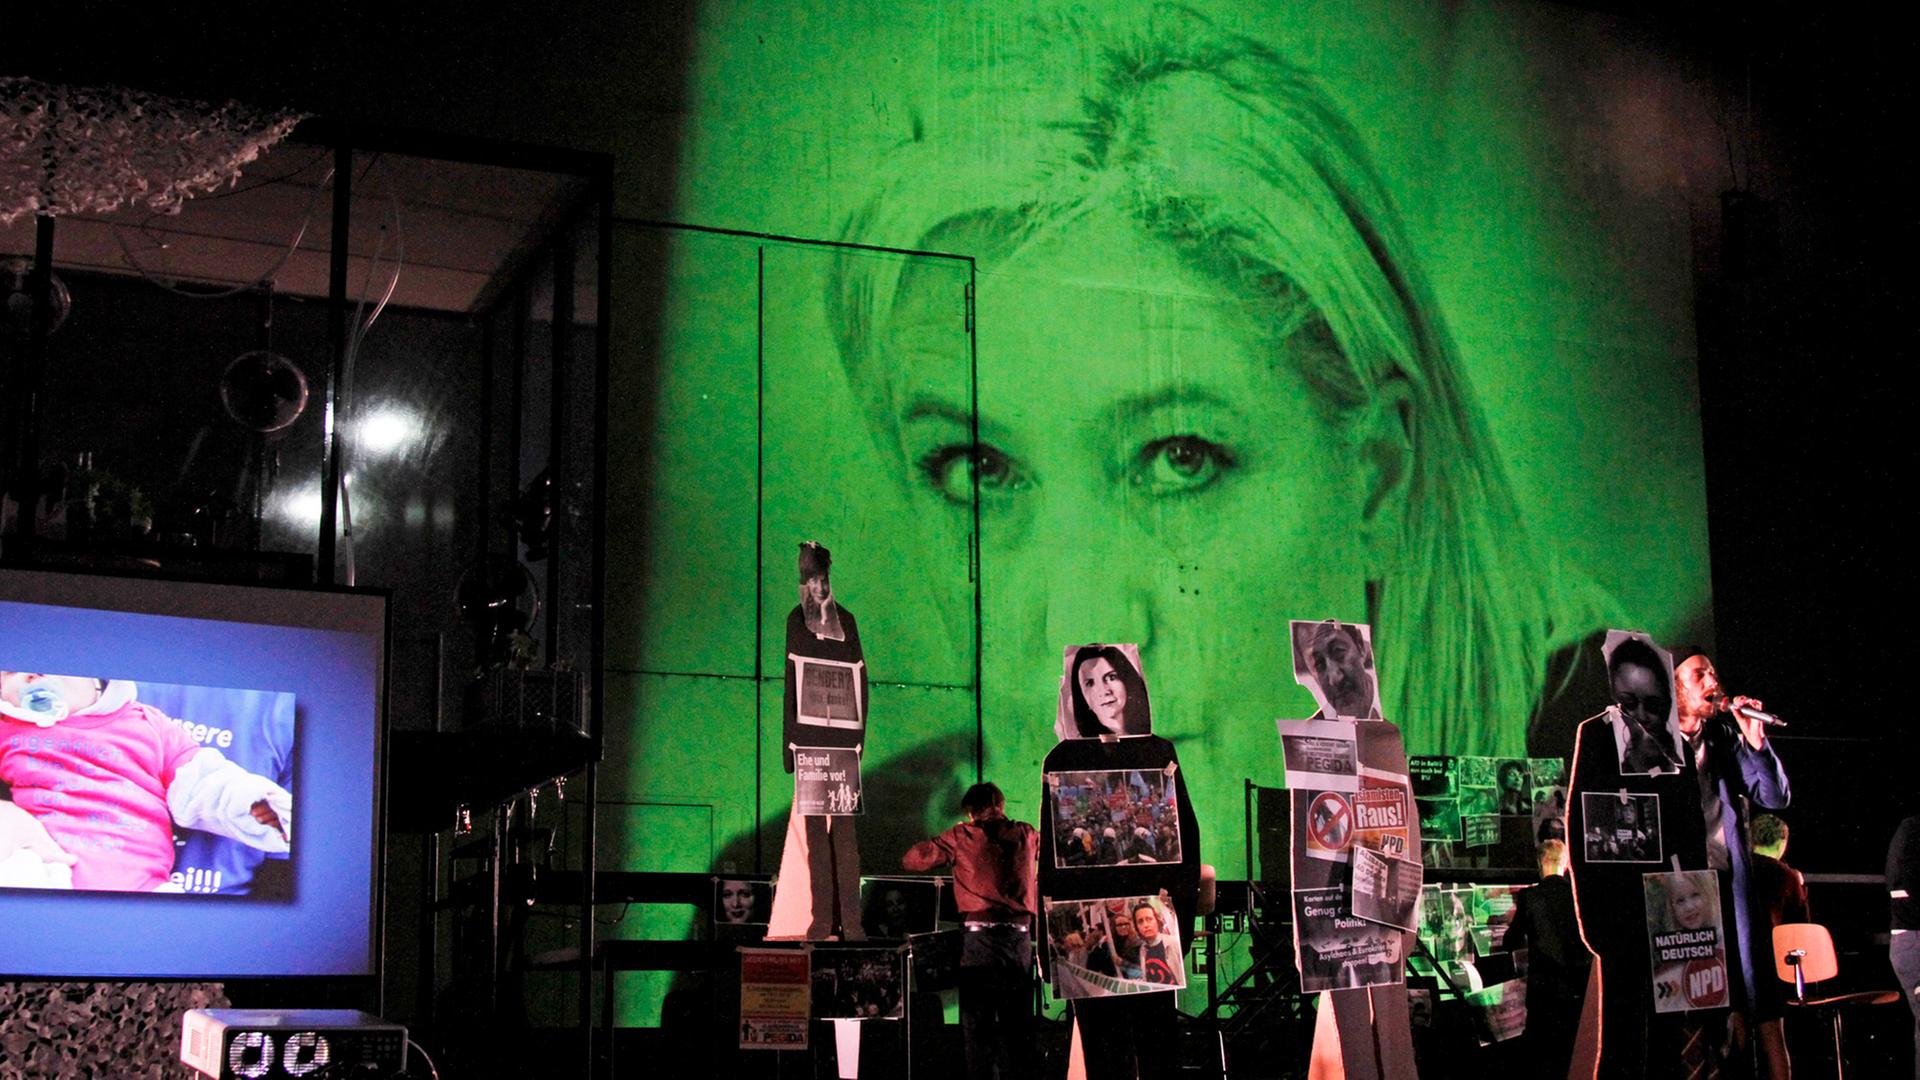 Eine Szene aus dem Stück "Fear" von Falk Richter, aufgeführt an der Berliner Schaubühne – im Hintergrund ist in einer Videoprojektion Marine Le Pen, Parteivorsitzende der französischen Front National, zu sehen.